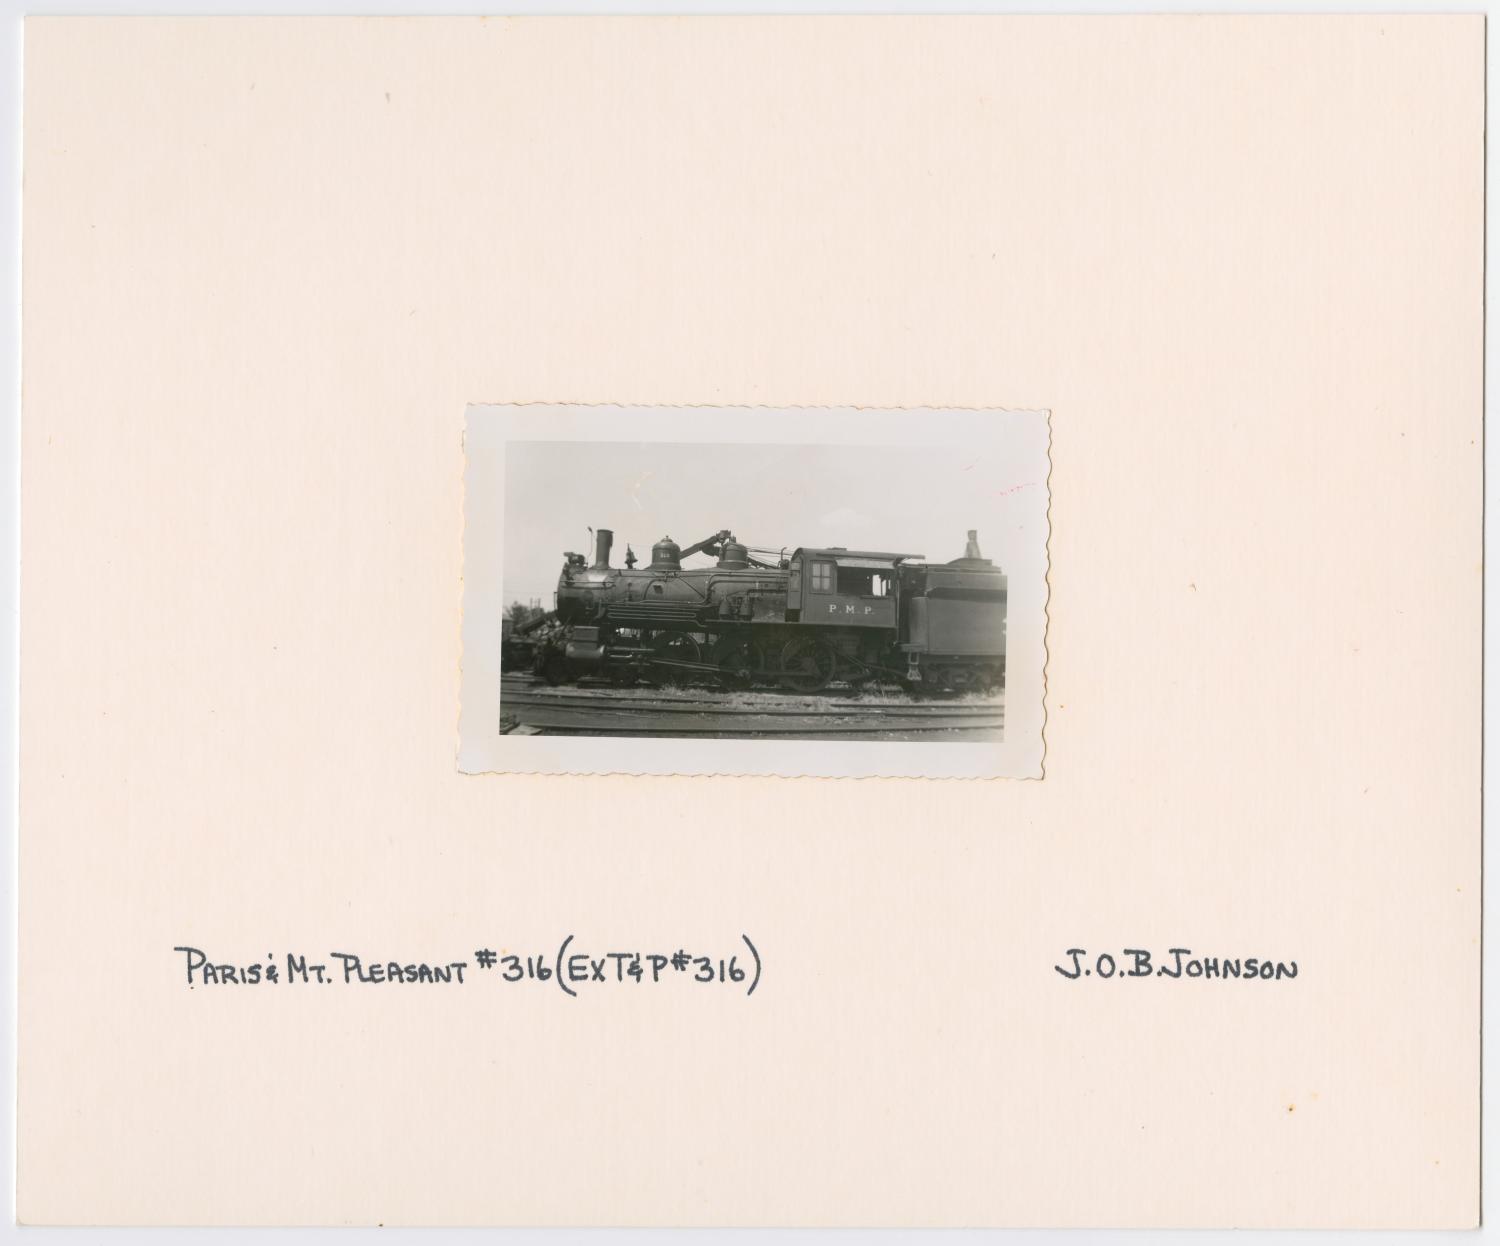 Image of T&P Diesel D-9 #316